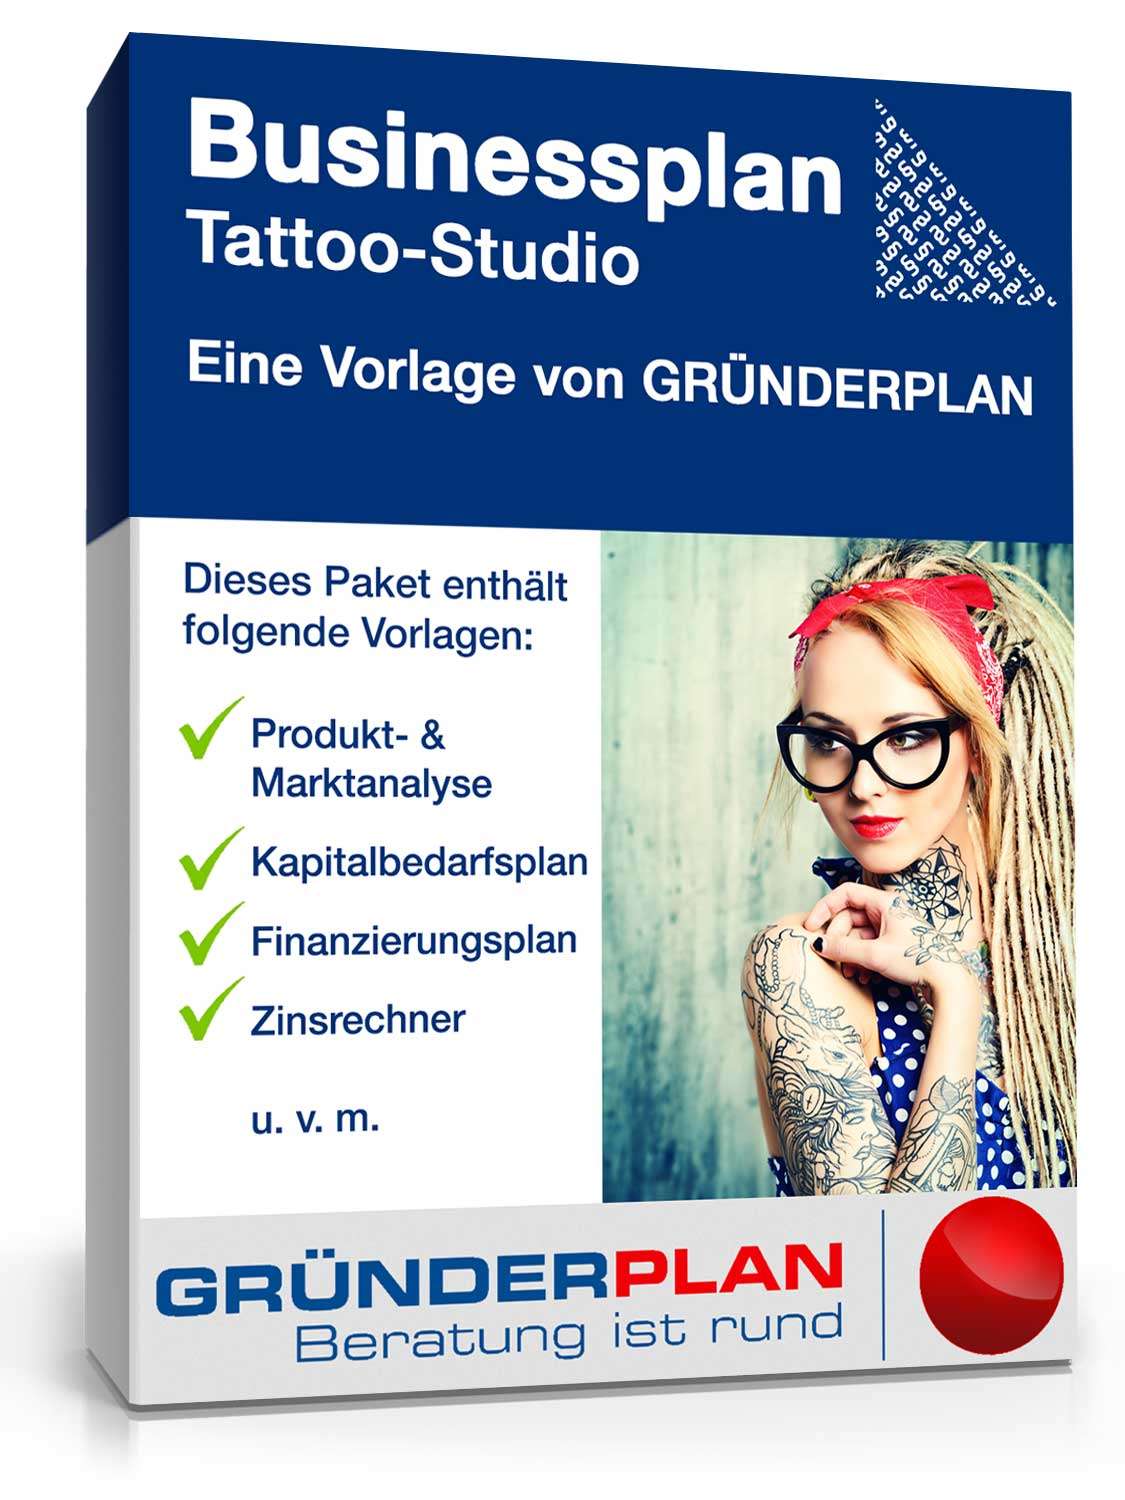 Hauptbild des Produkts: Businessplan Tattoo-Studio von Gründerplan